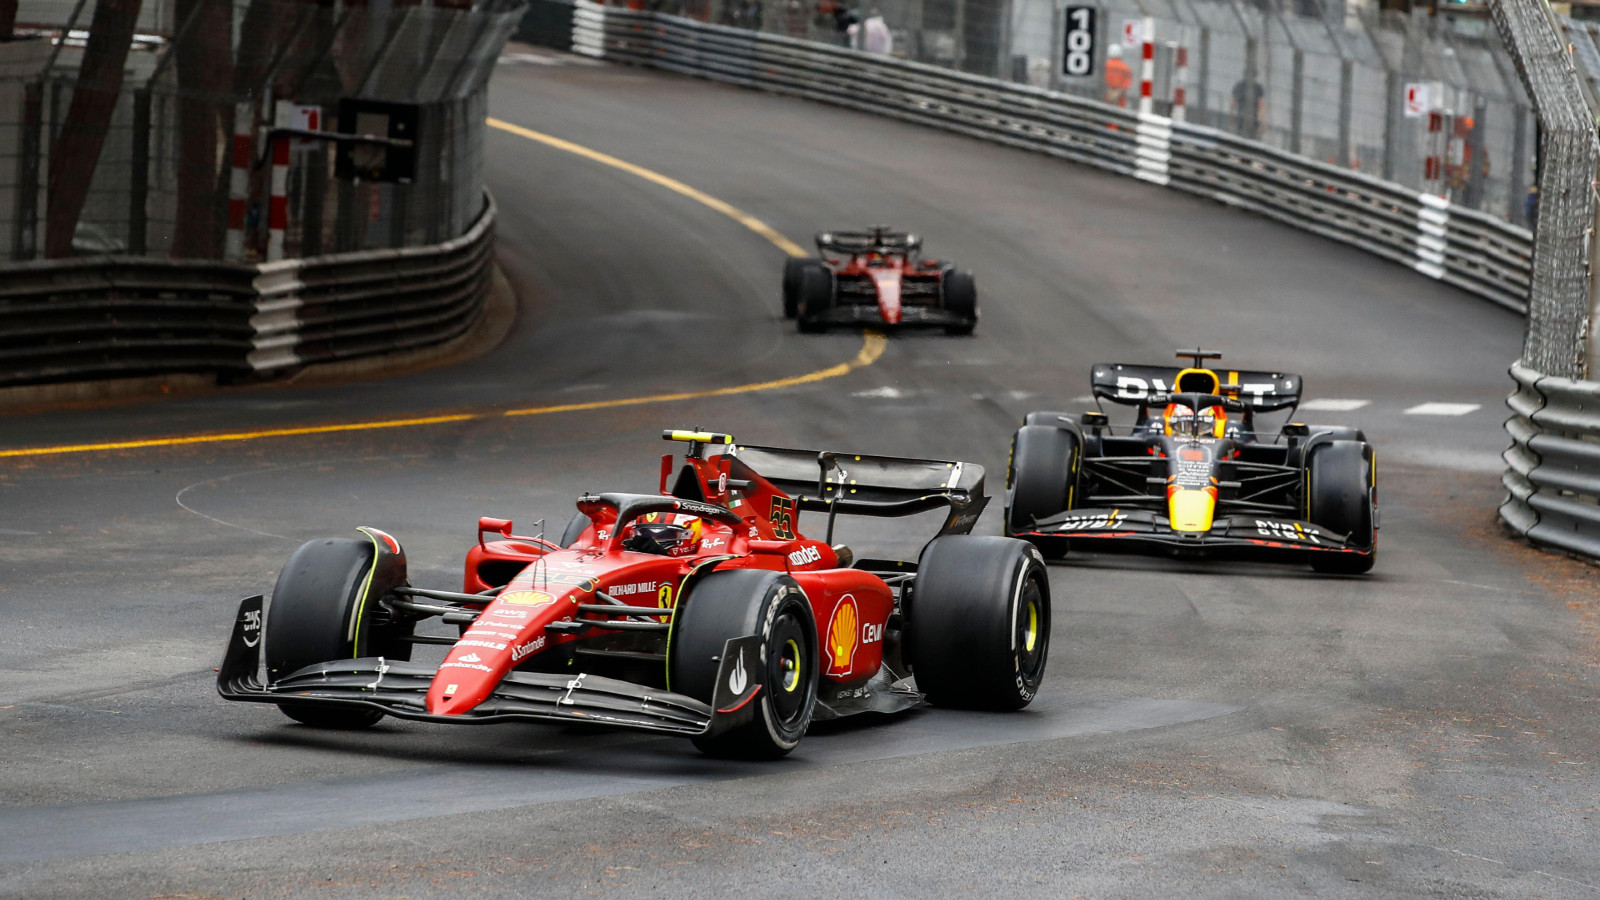 Ferrari's Carlos Sainz leads Red Bull's Max Verstappen during the Monaco Grand Prix. FIA Monte Carlo, May 2022.